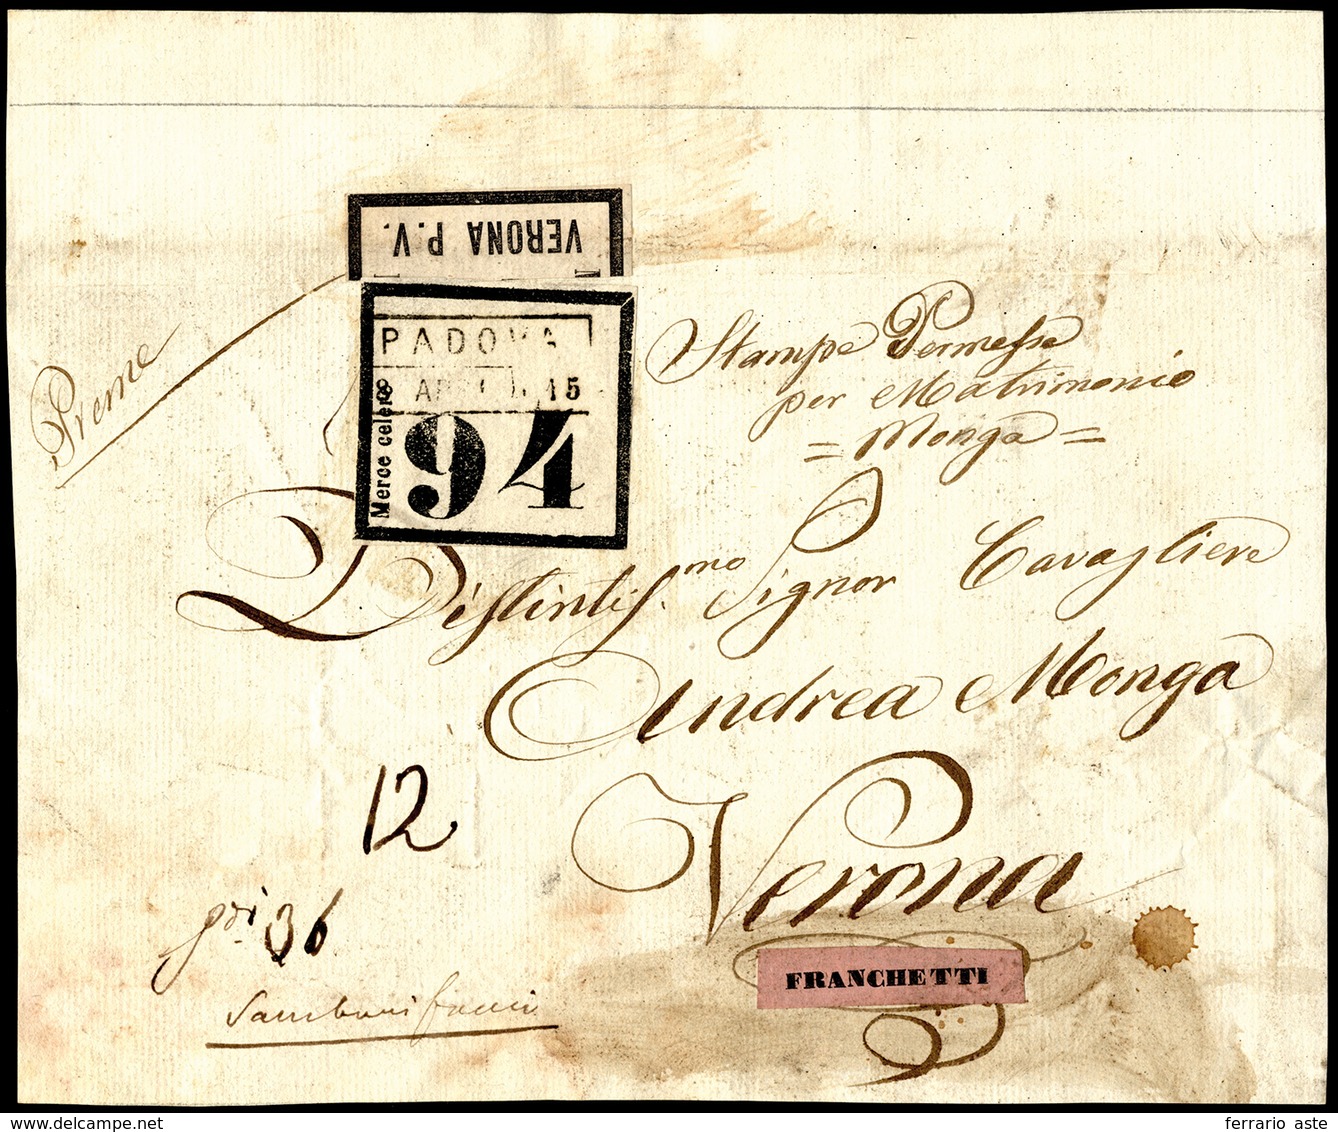 1850 Ca - Frontespizio Di Pacco Da Padova 15/4 A Verona, Etichetta Di "Merce Celere 94" Ed Etichetta... - Lombardo-Veneto